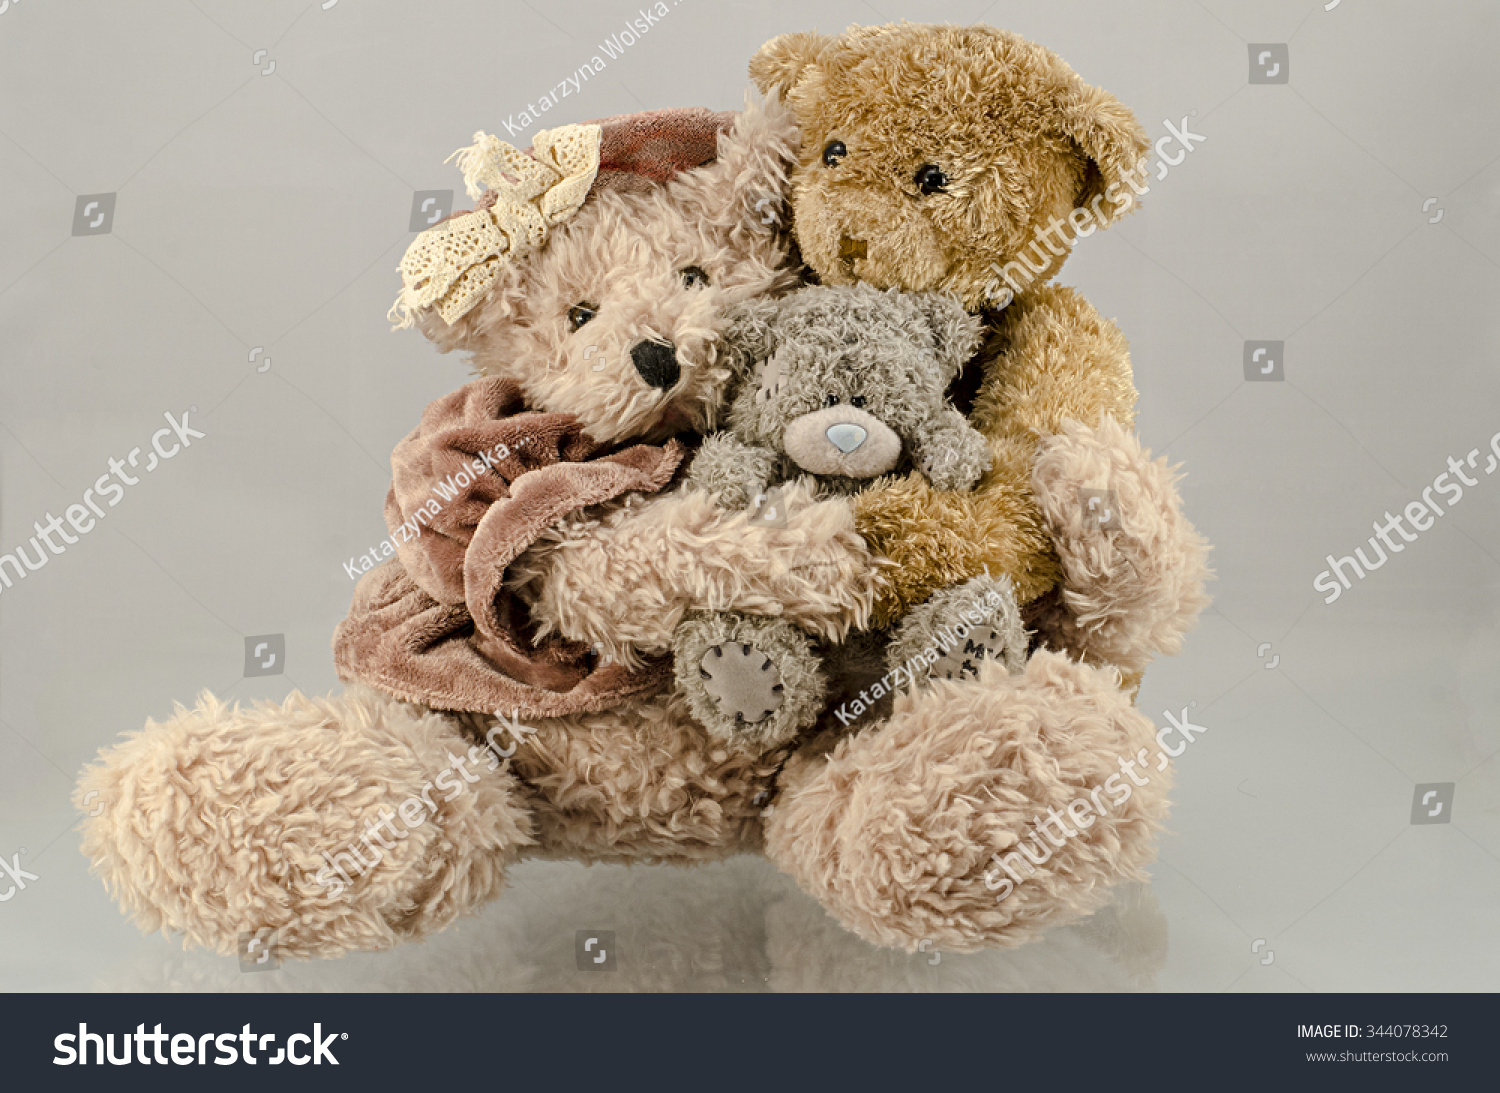 mrs teddy bear